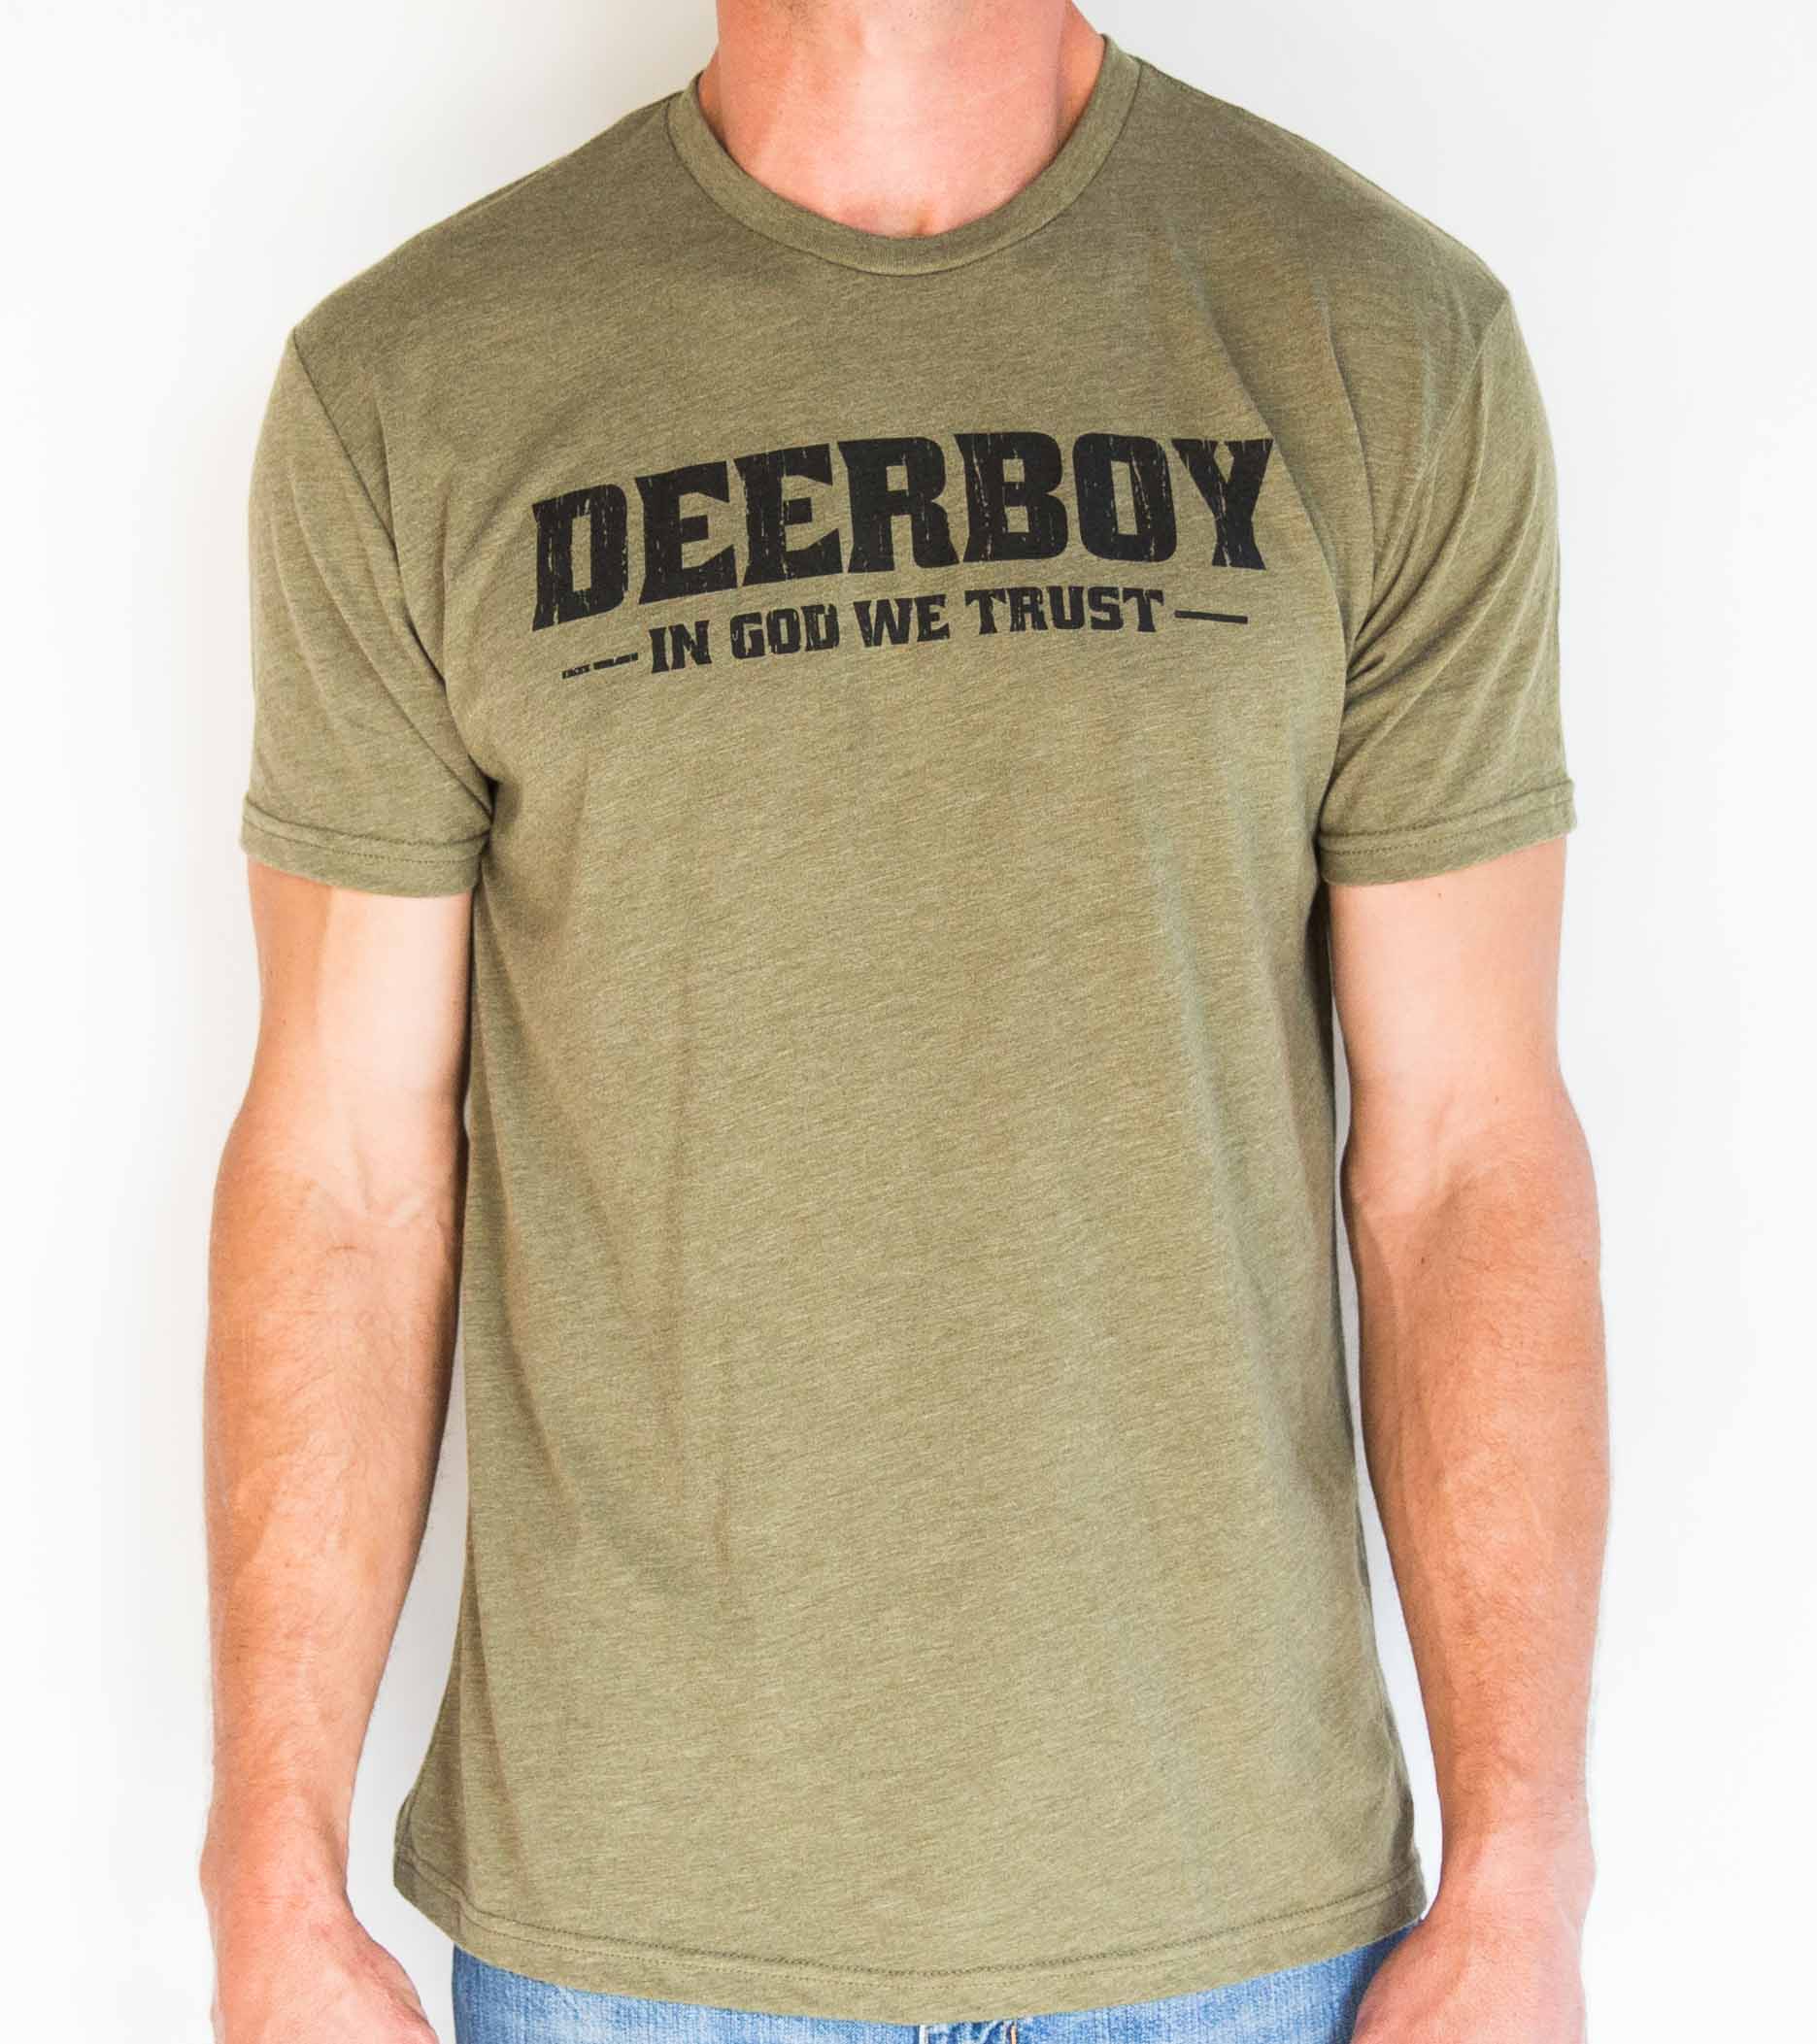 Deerboy Trust Tee In Olive Drab